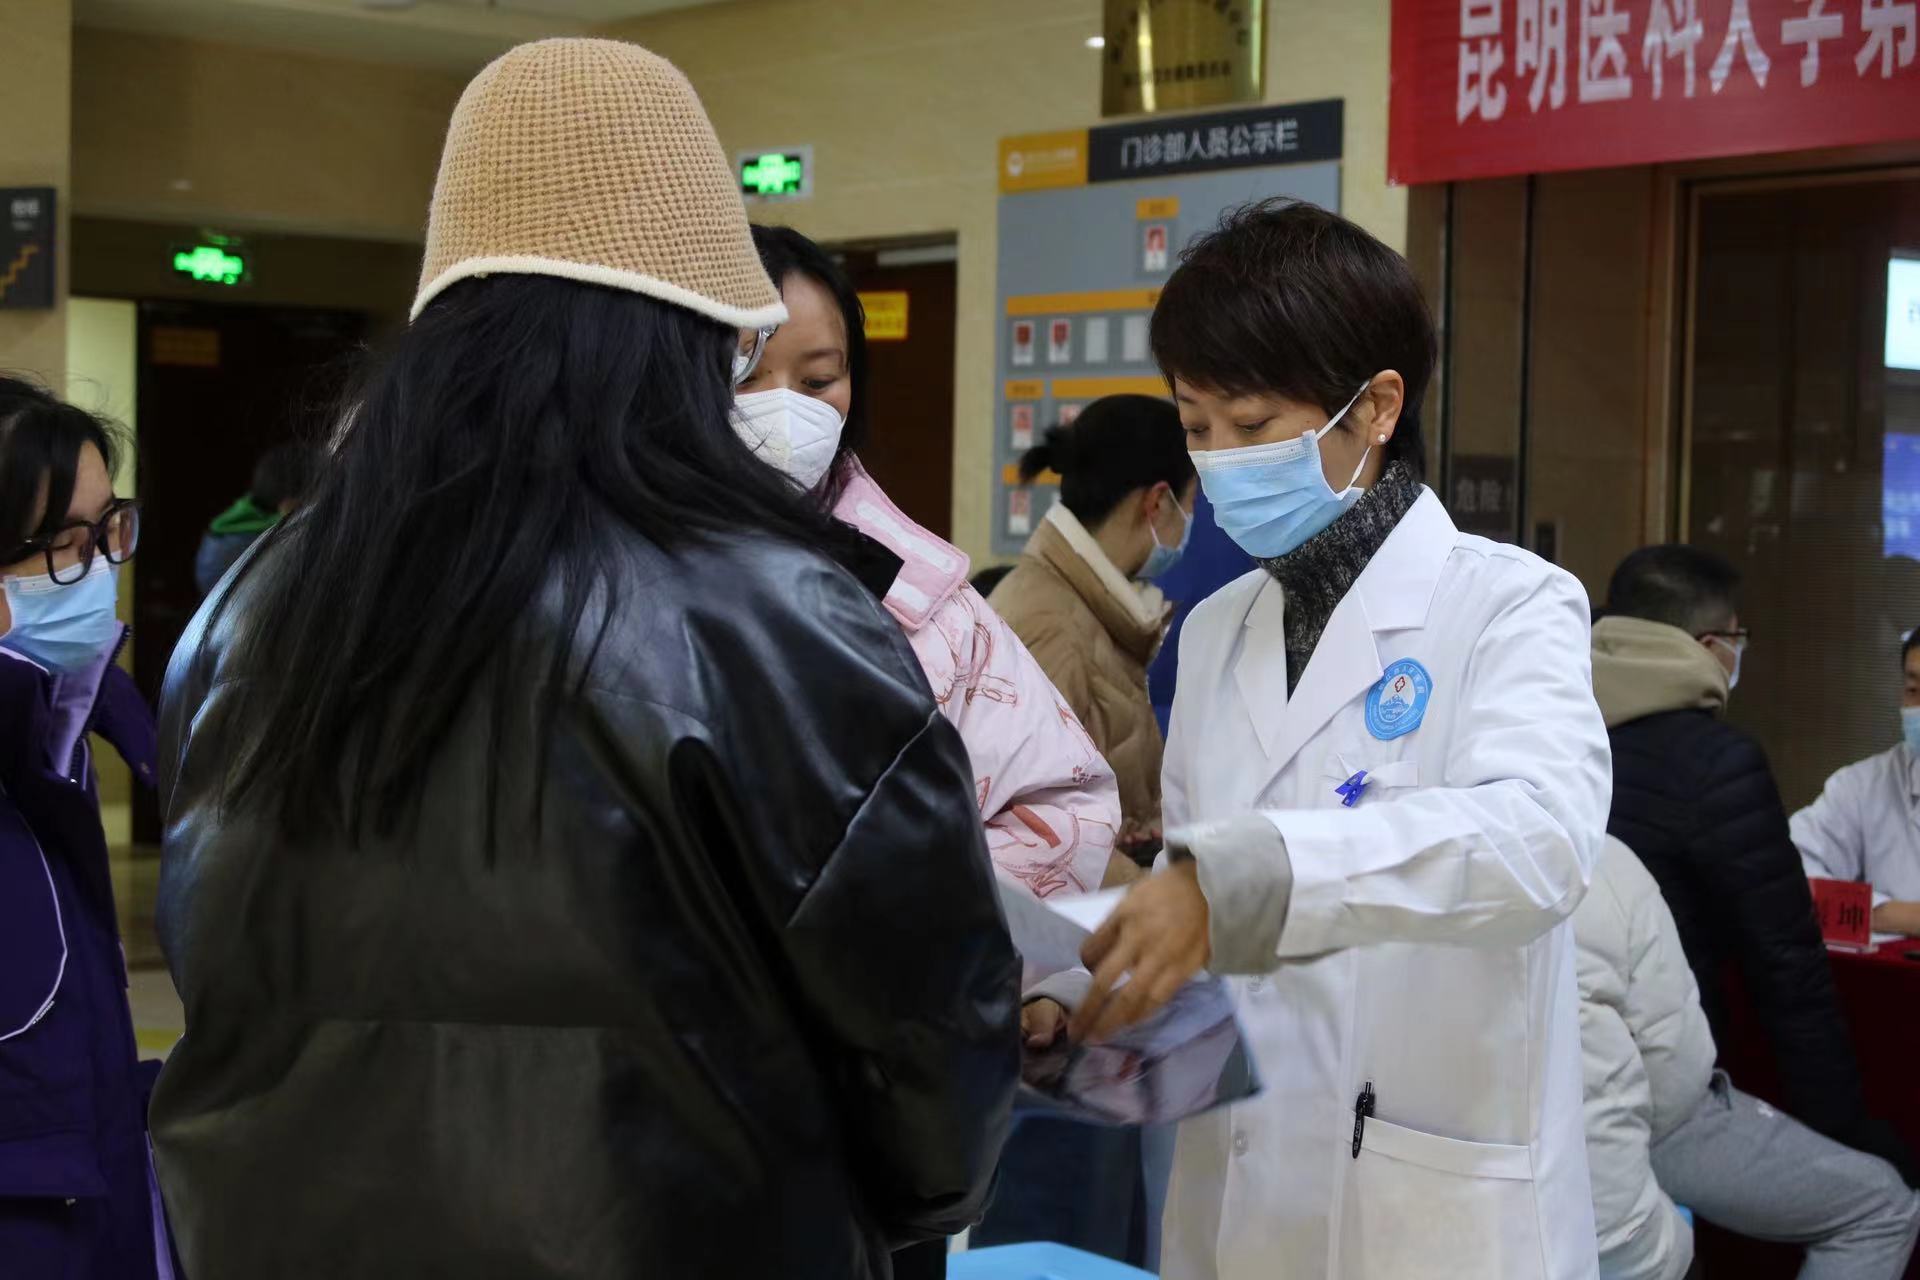 昆明医科大学第二附属医院专家团队在丽江市人民医院举行大型义诊 (2).jpg